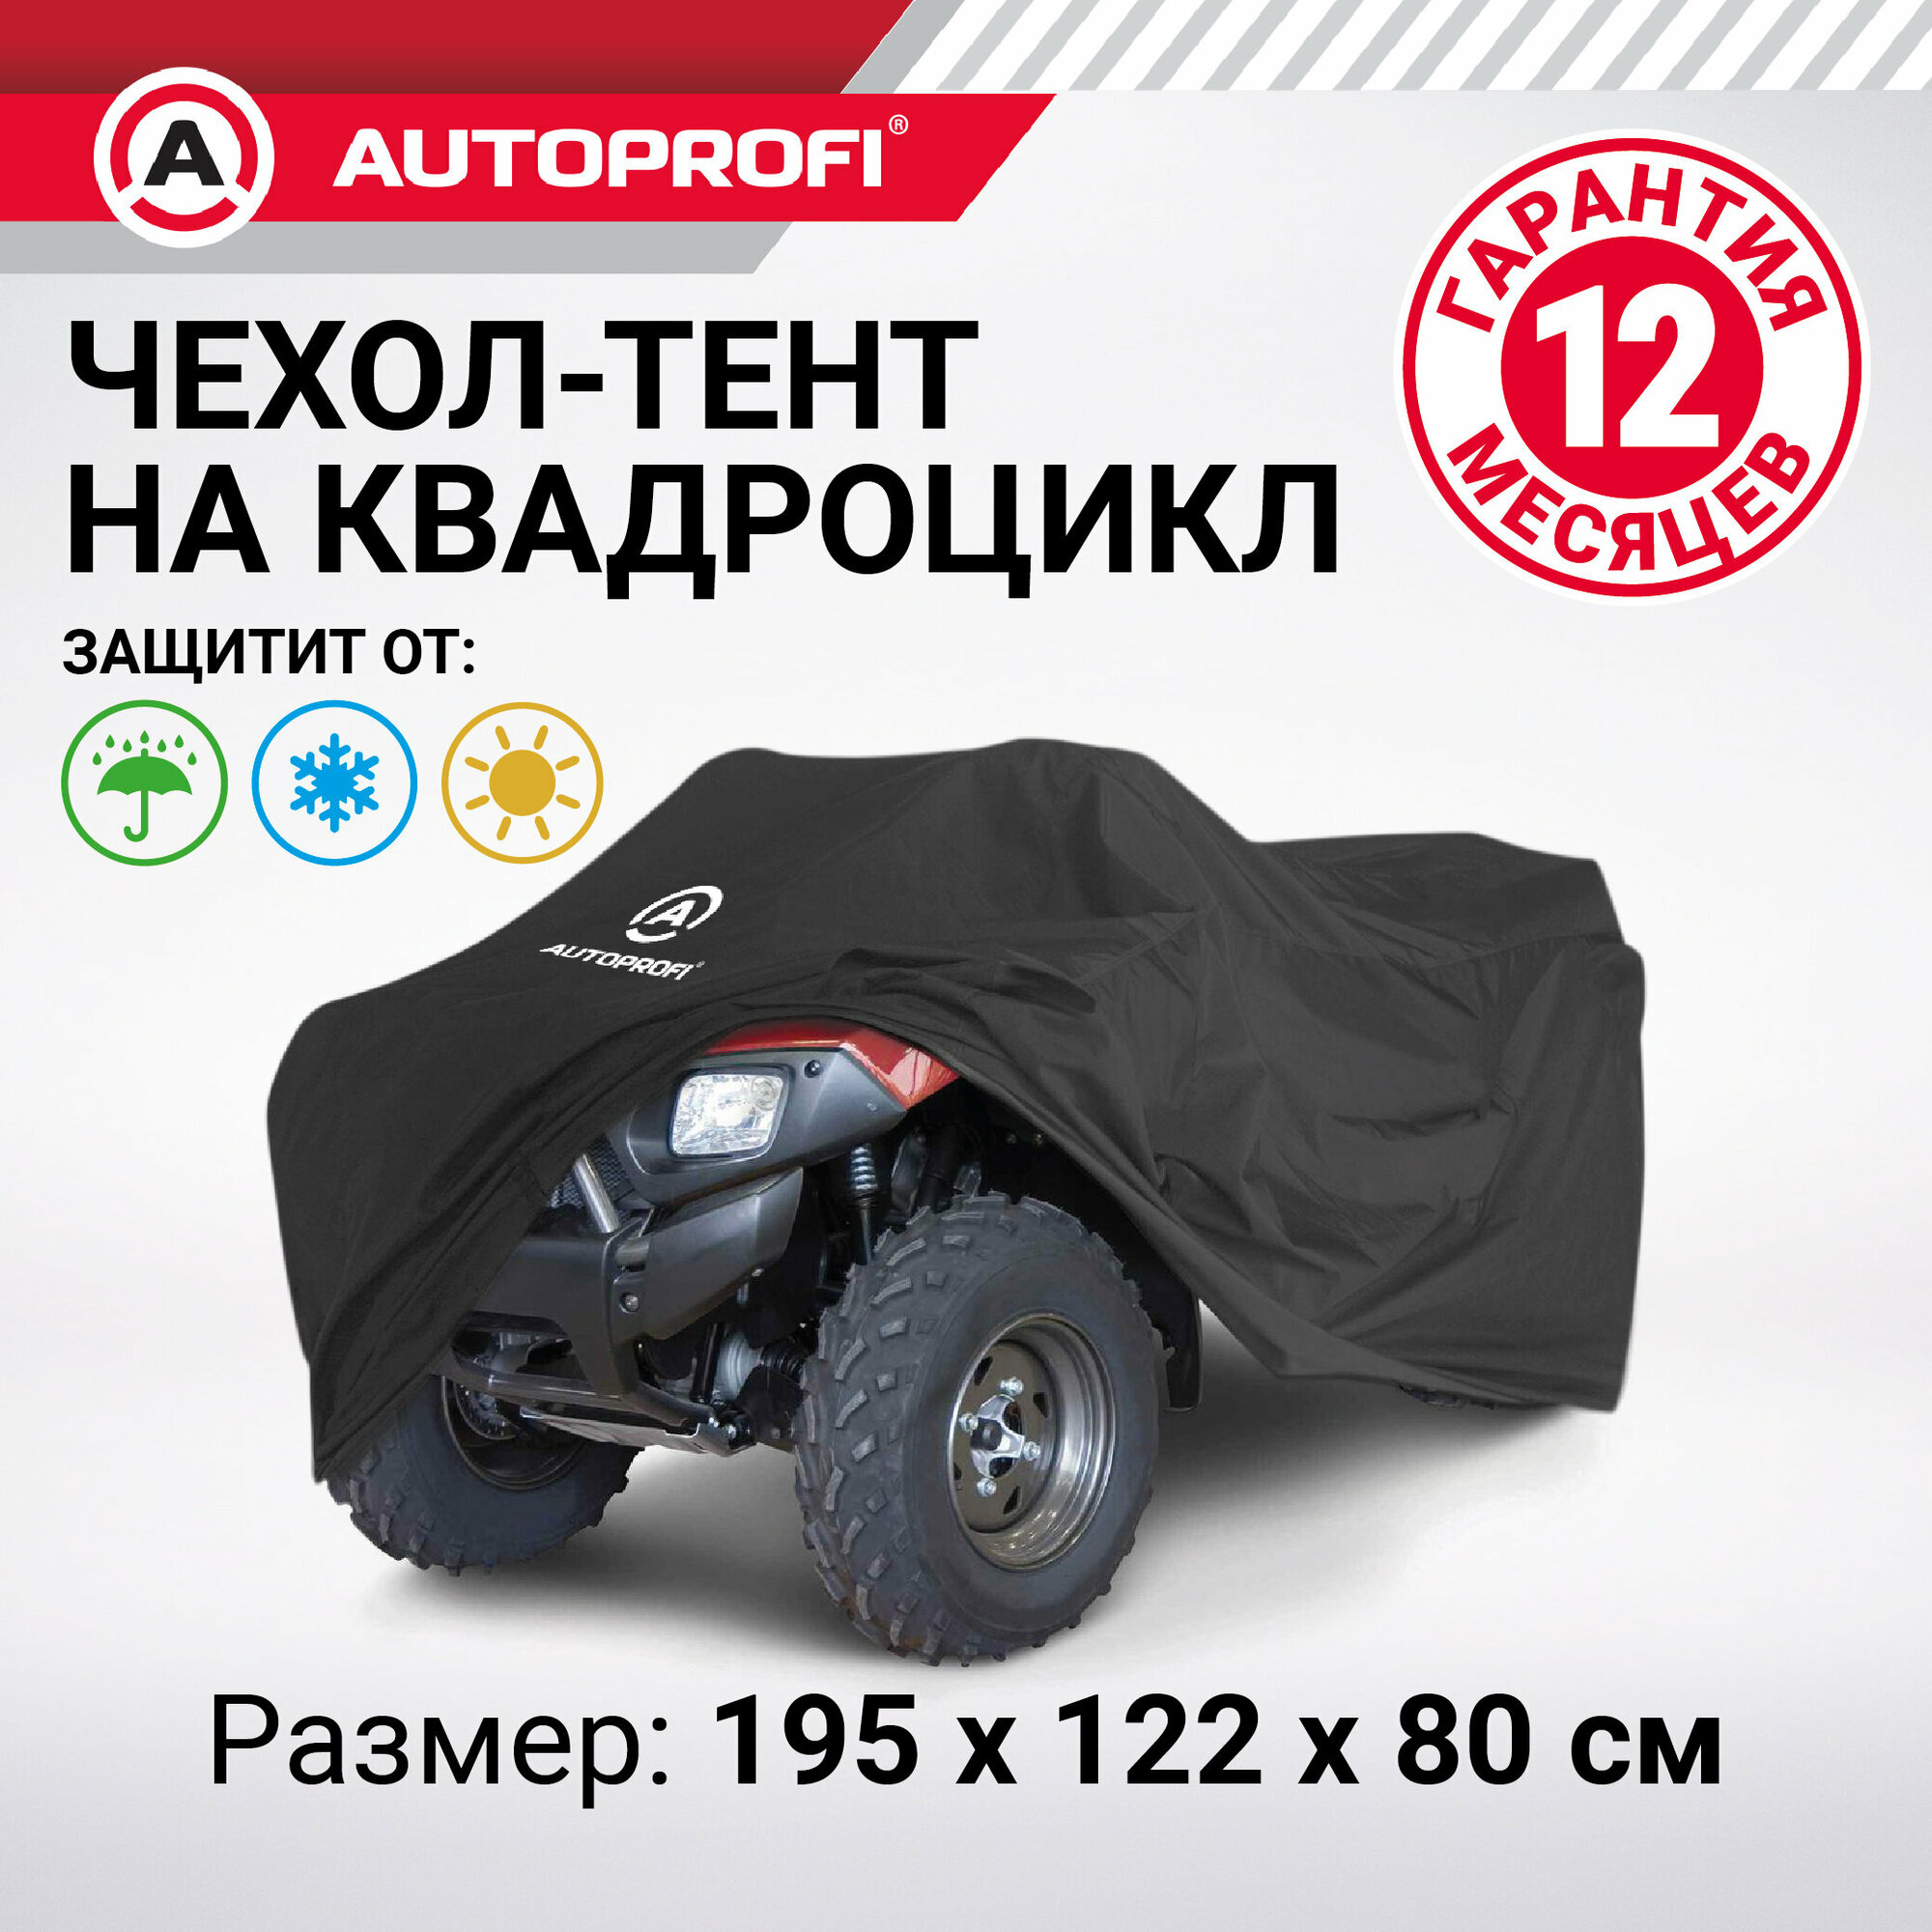 Чехол для квадроцикла Autoprofi 195*122*80 см. ATV-200 (195)